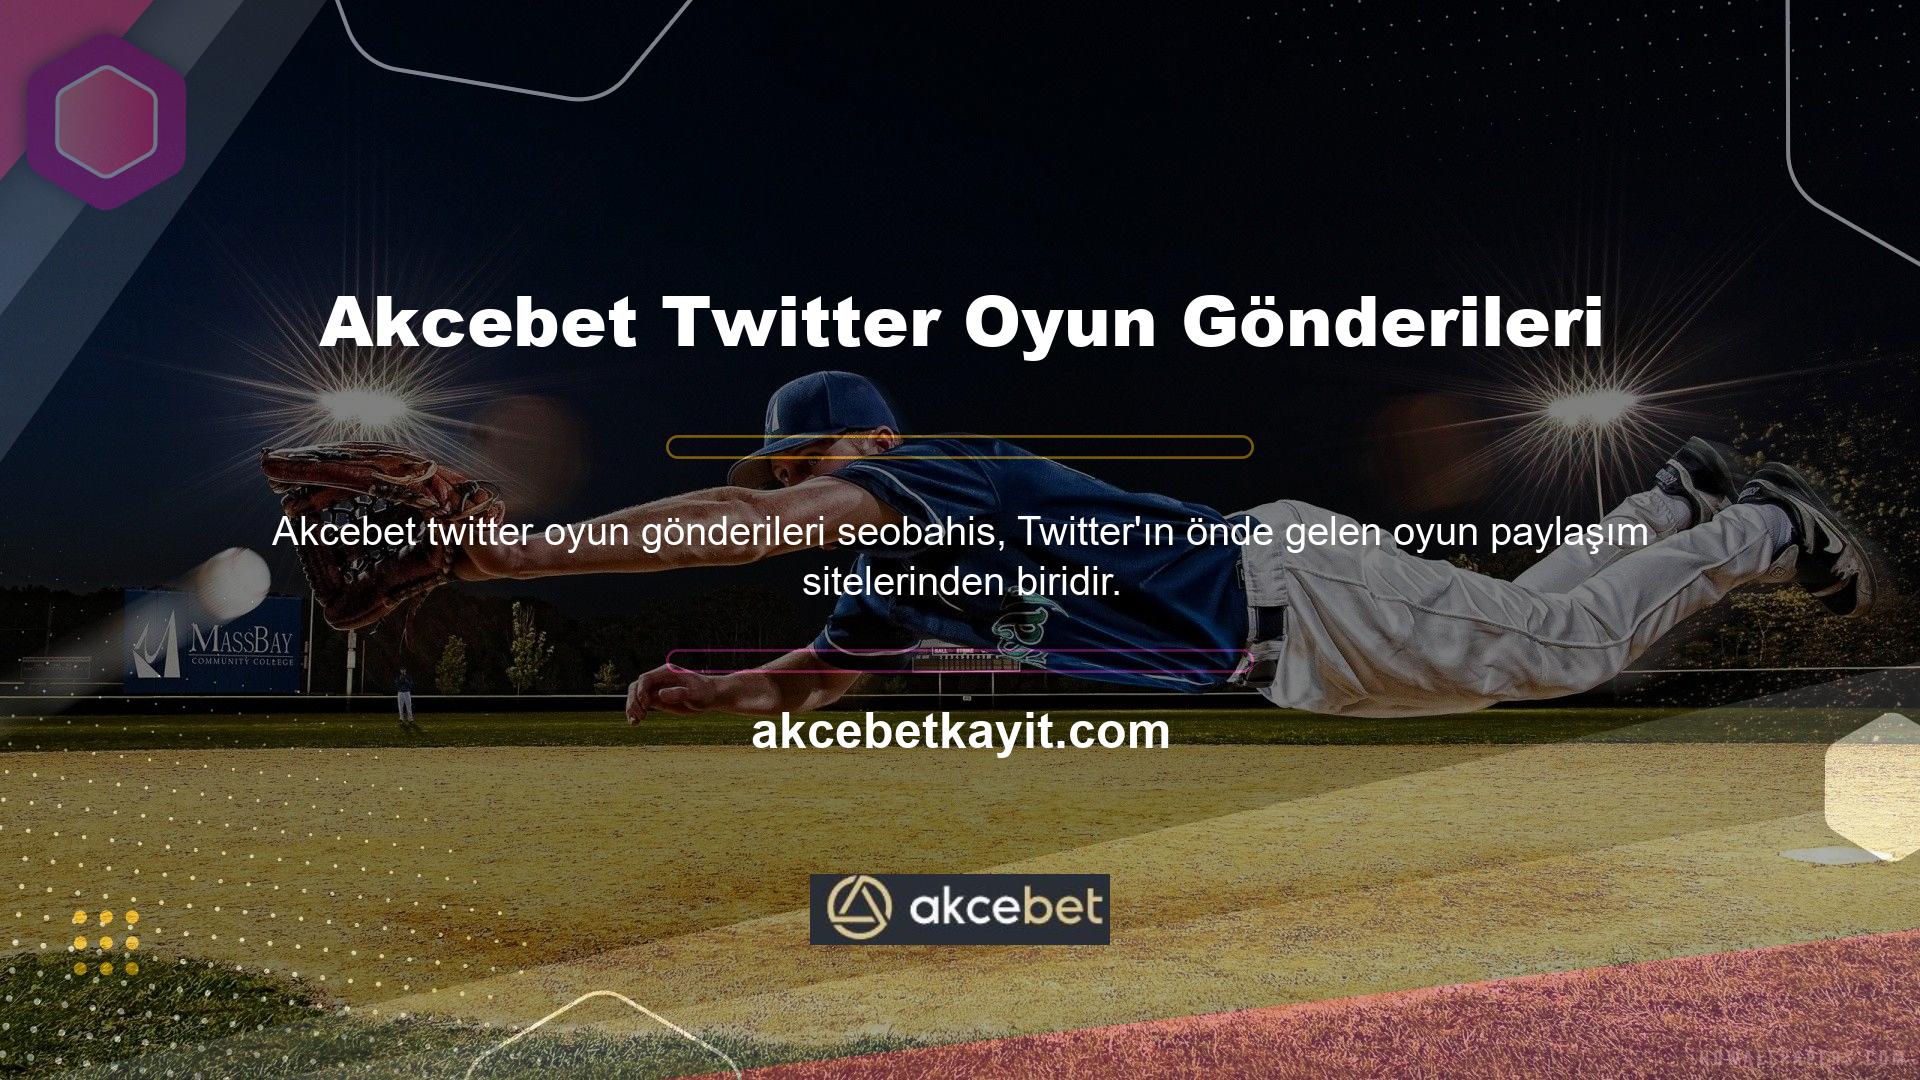 Akcebet, Twitter'da oyun yayınlamayı çok seviyor ve düzenli olarak casino tutkunları hakkında yazılar yayınlıyor